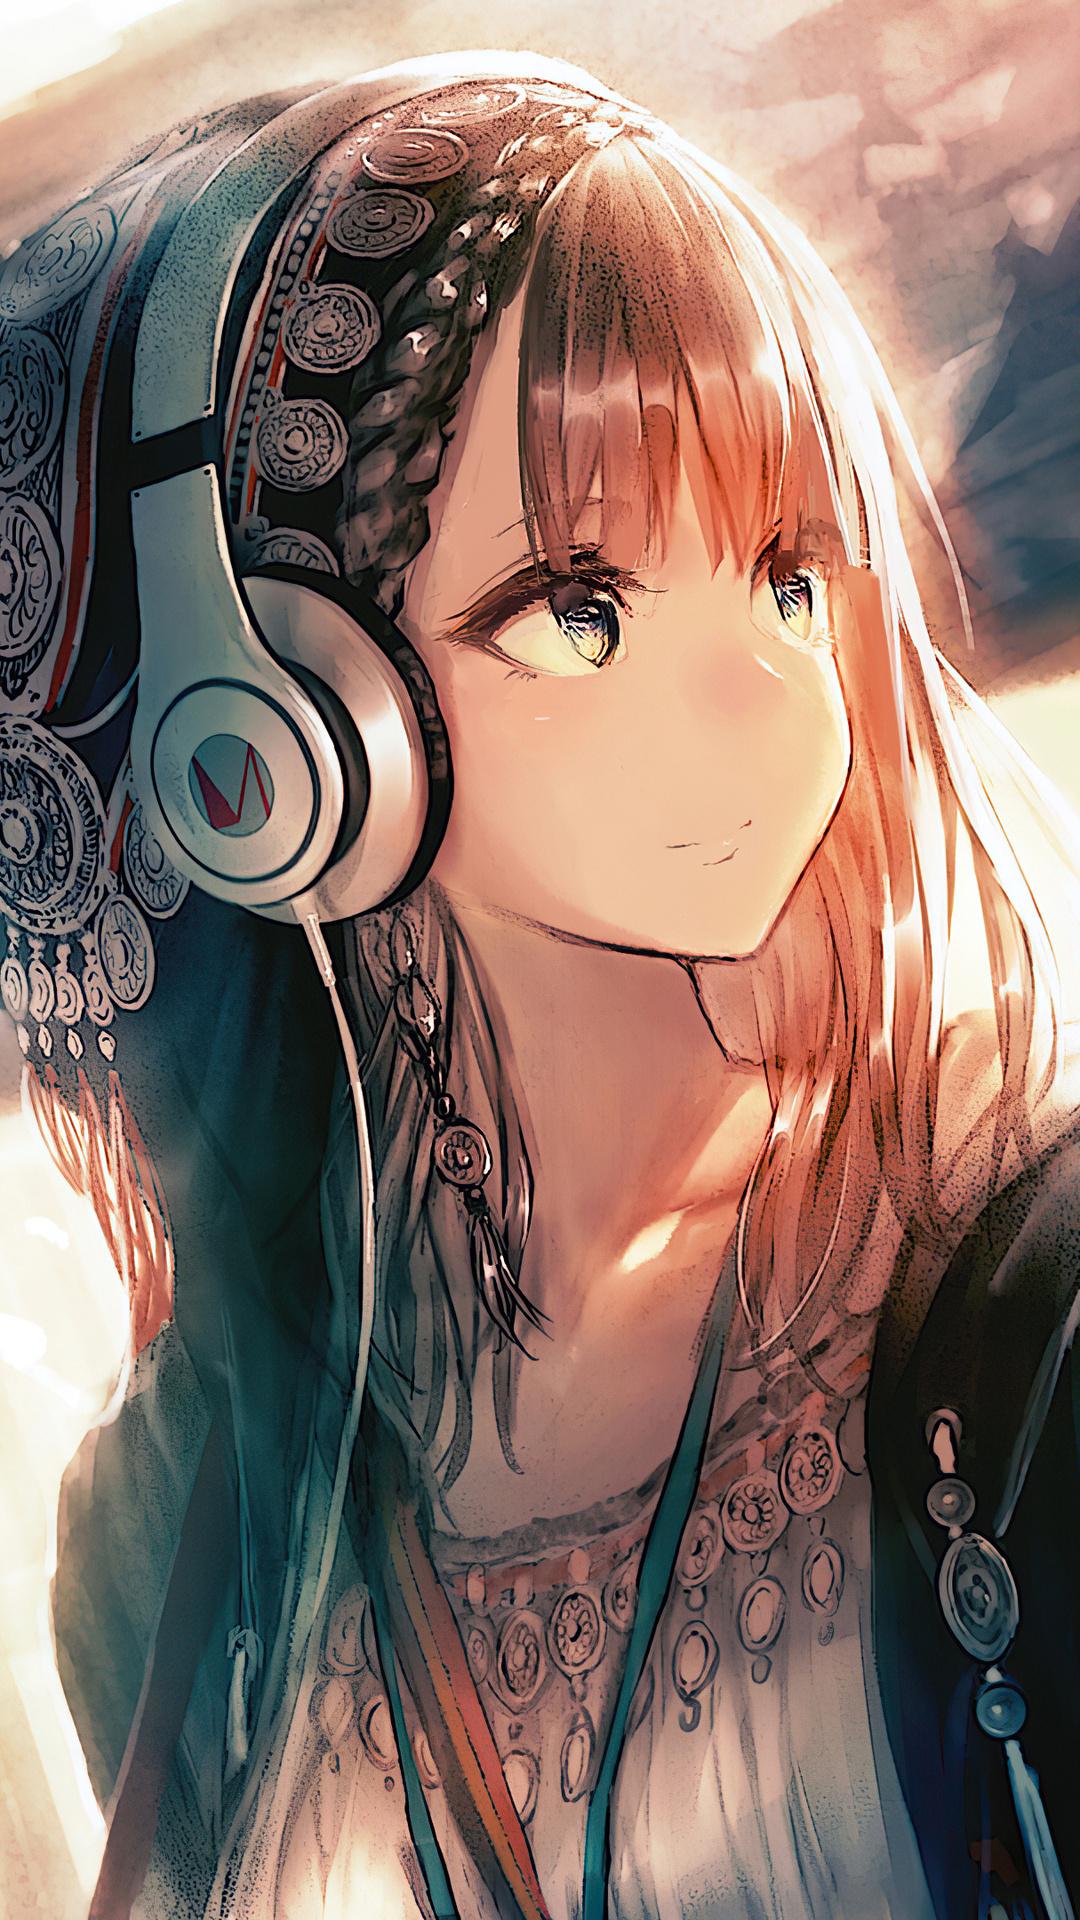 1080 x 1920 · jpeg - Anime Girl Headphones 4k Wallpaper